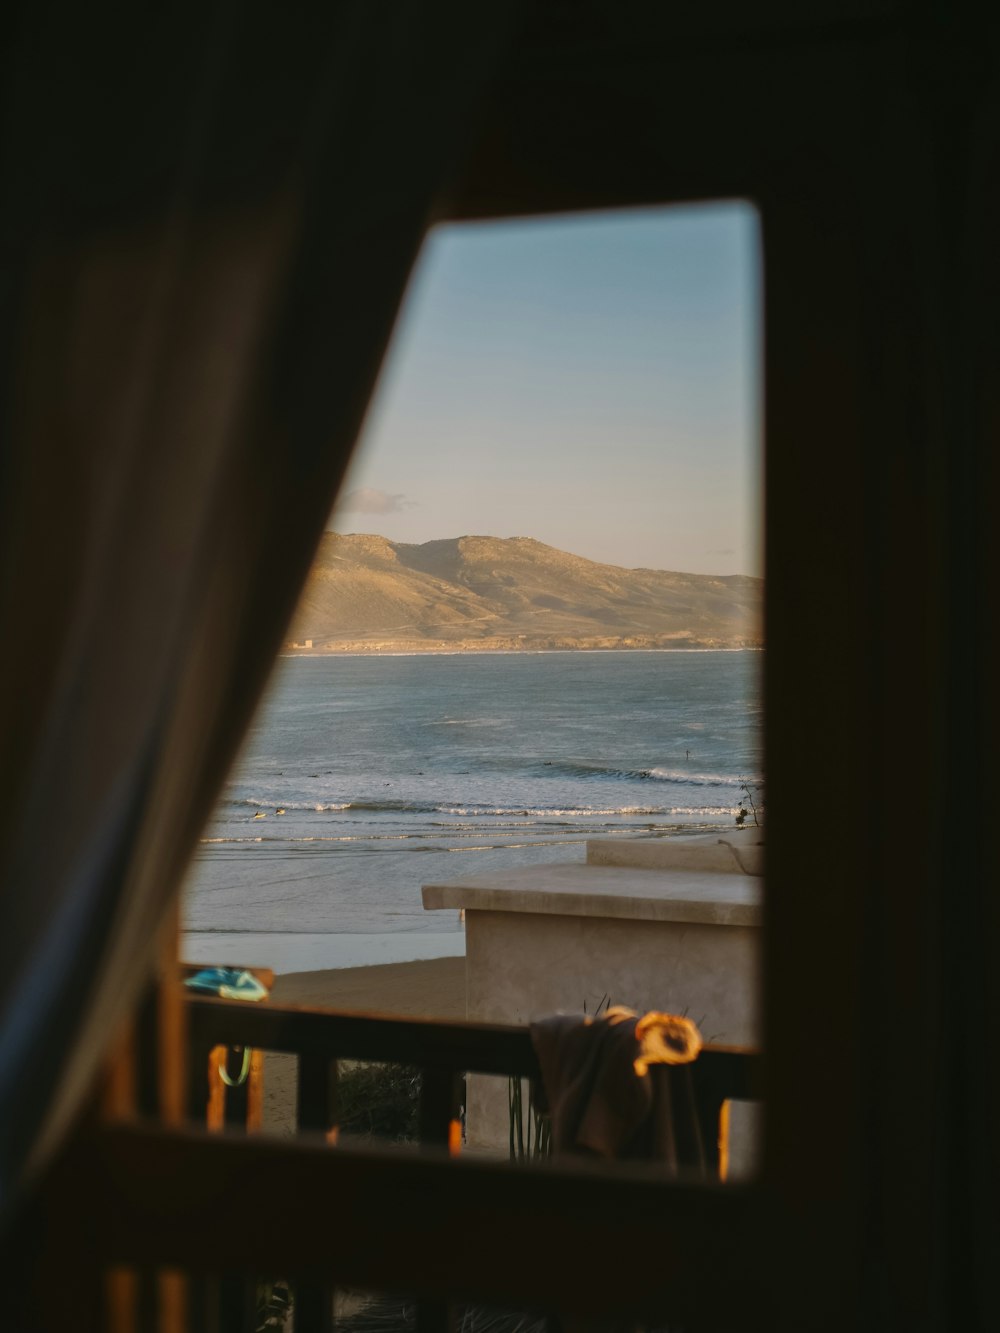 une vue d’une plage depuis une fenêtre